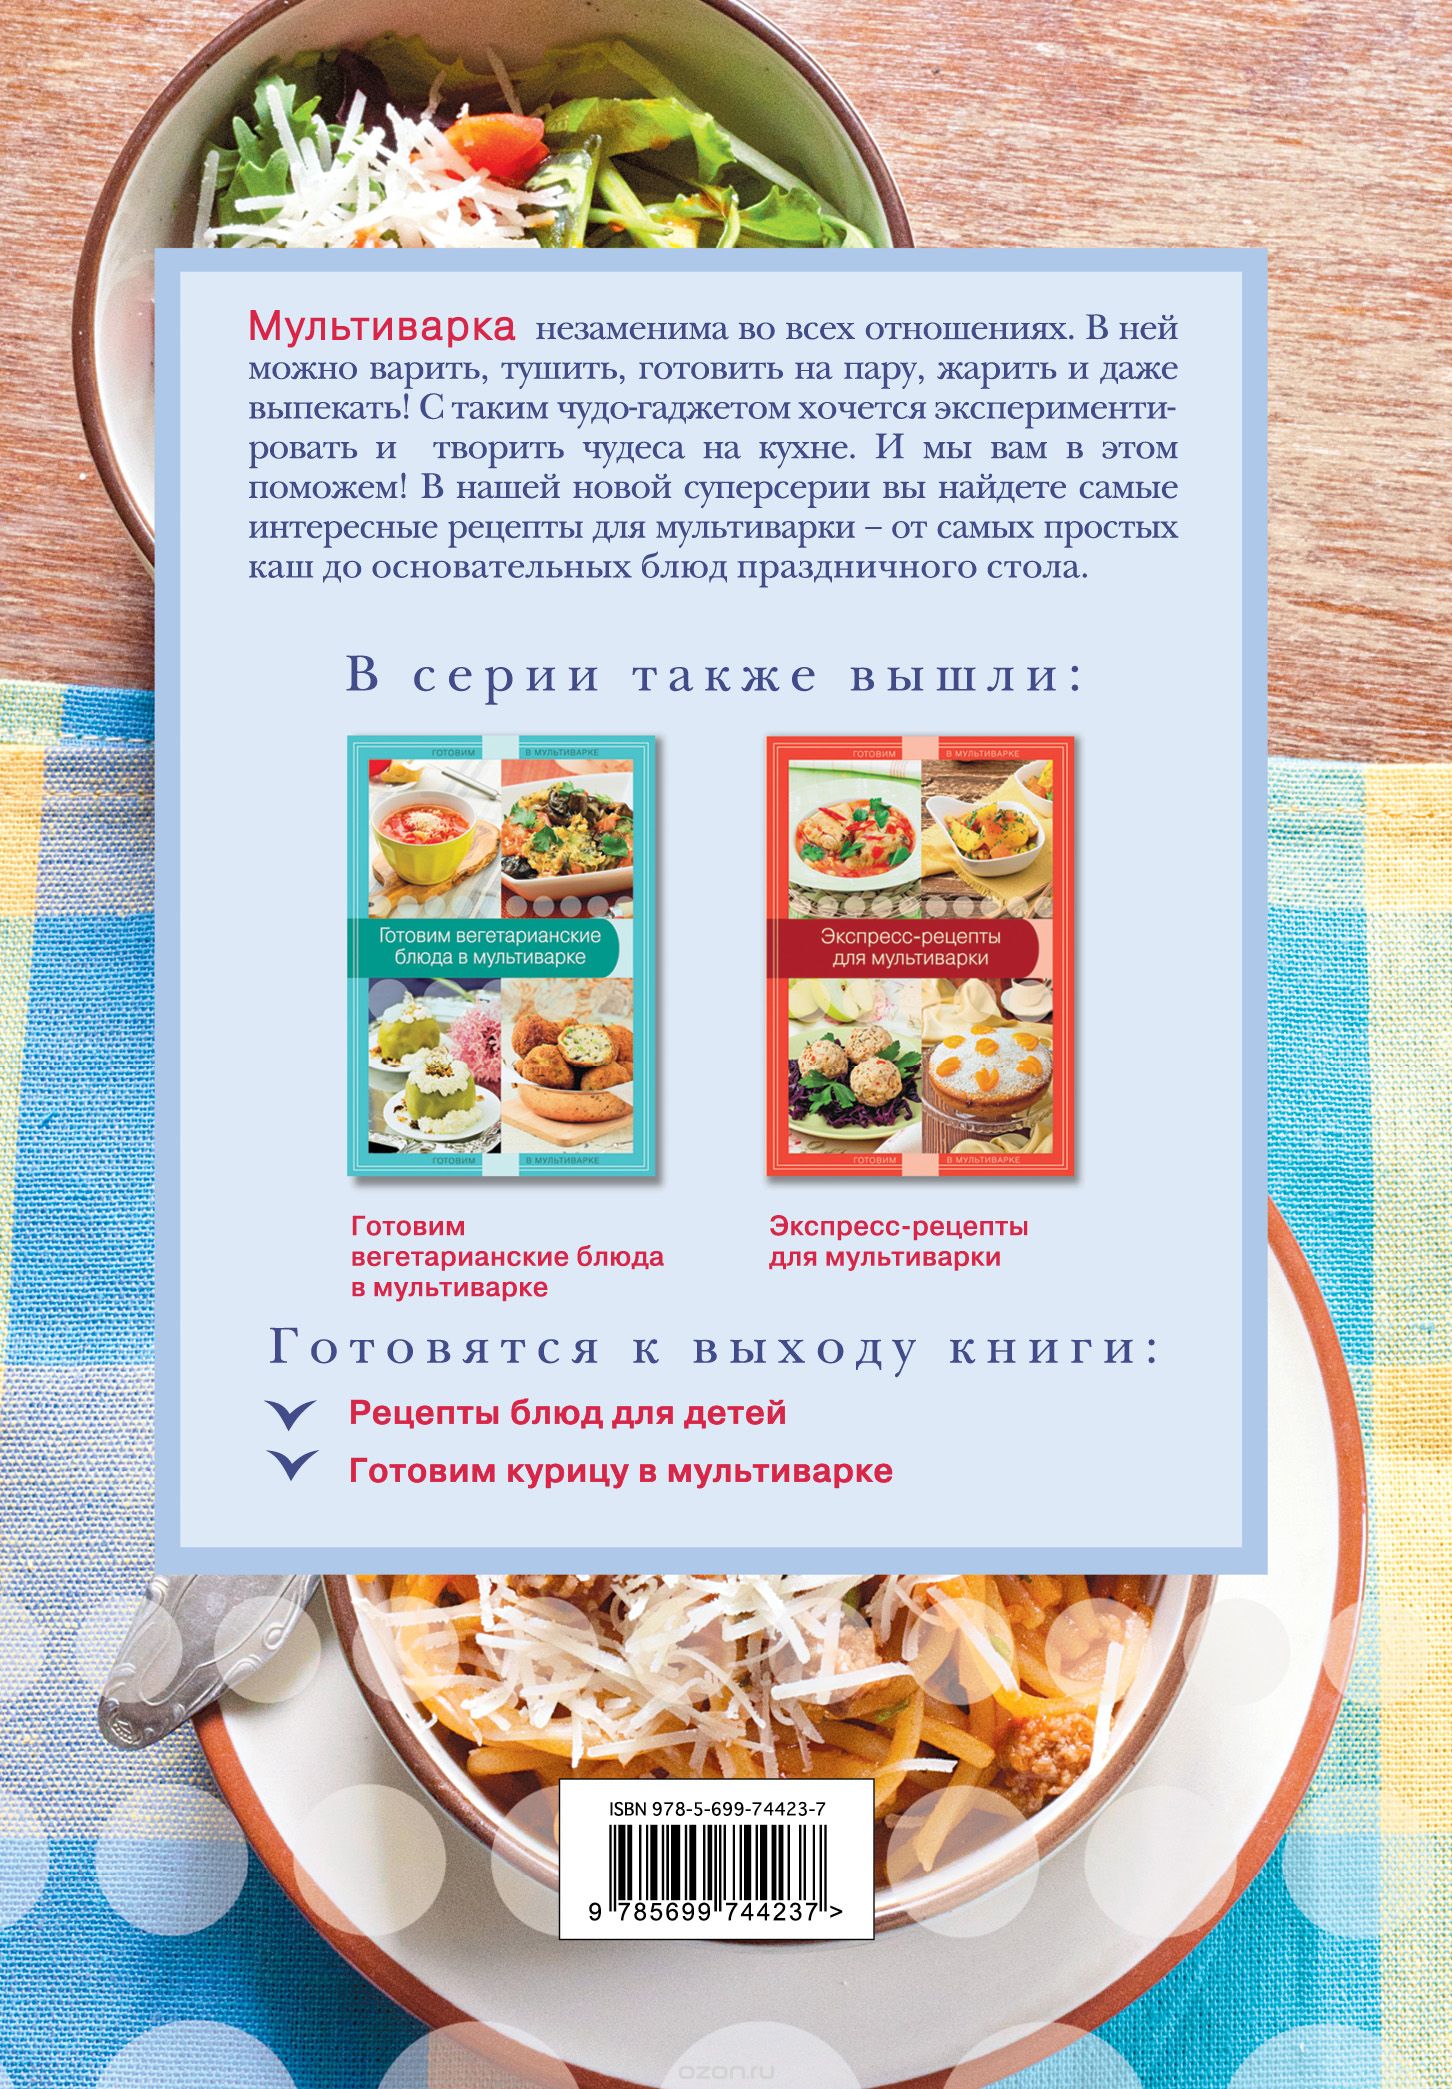 Рецепты национальной кухни | Лабиринт - Книги